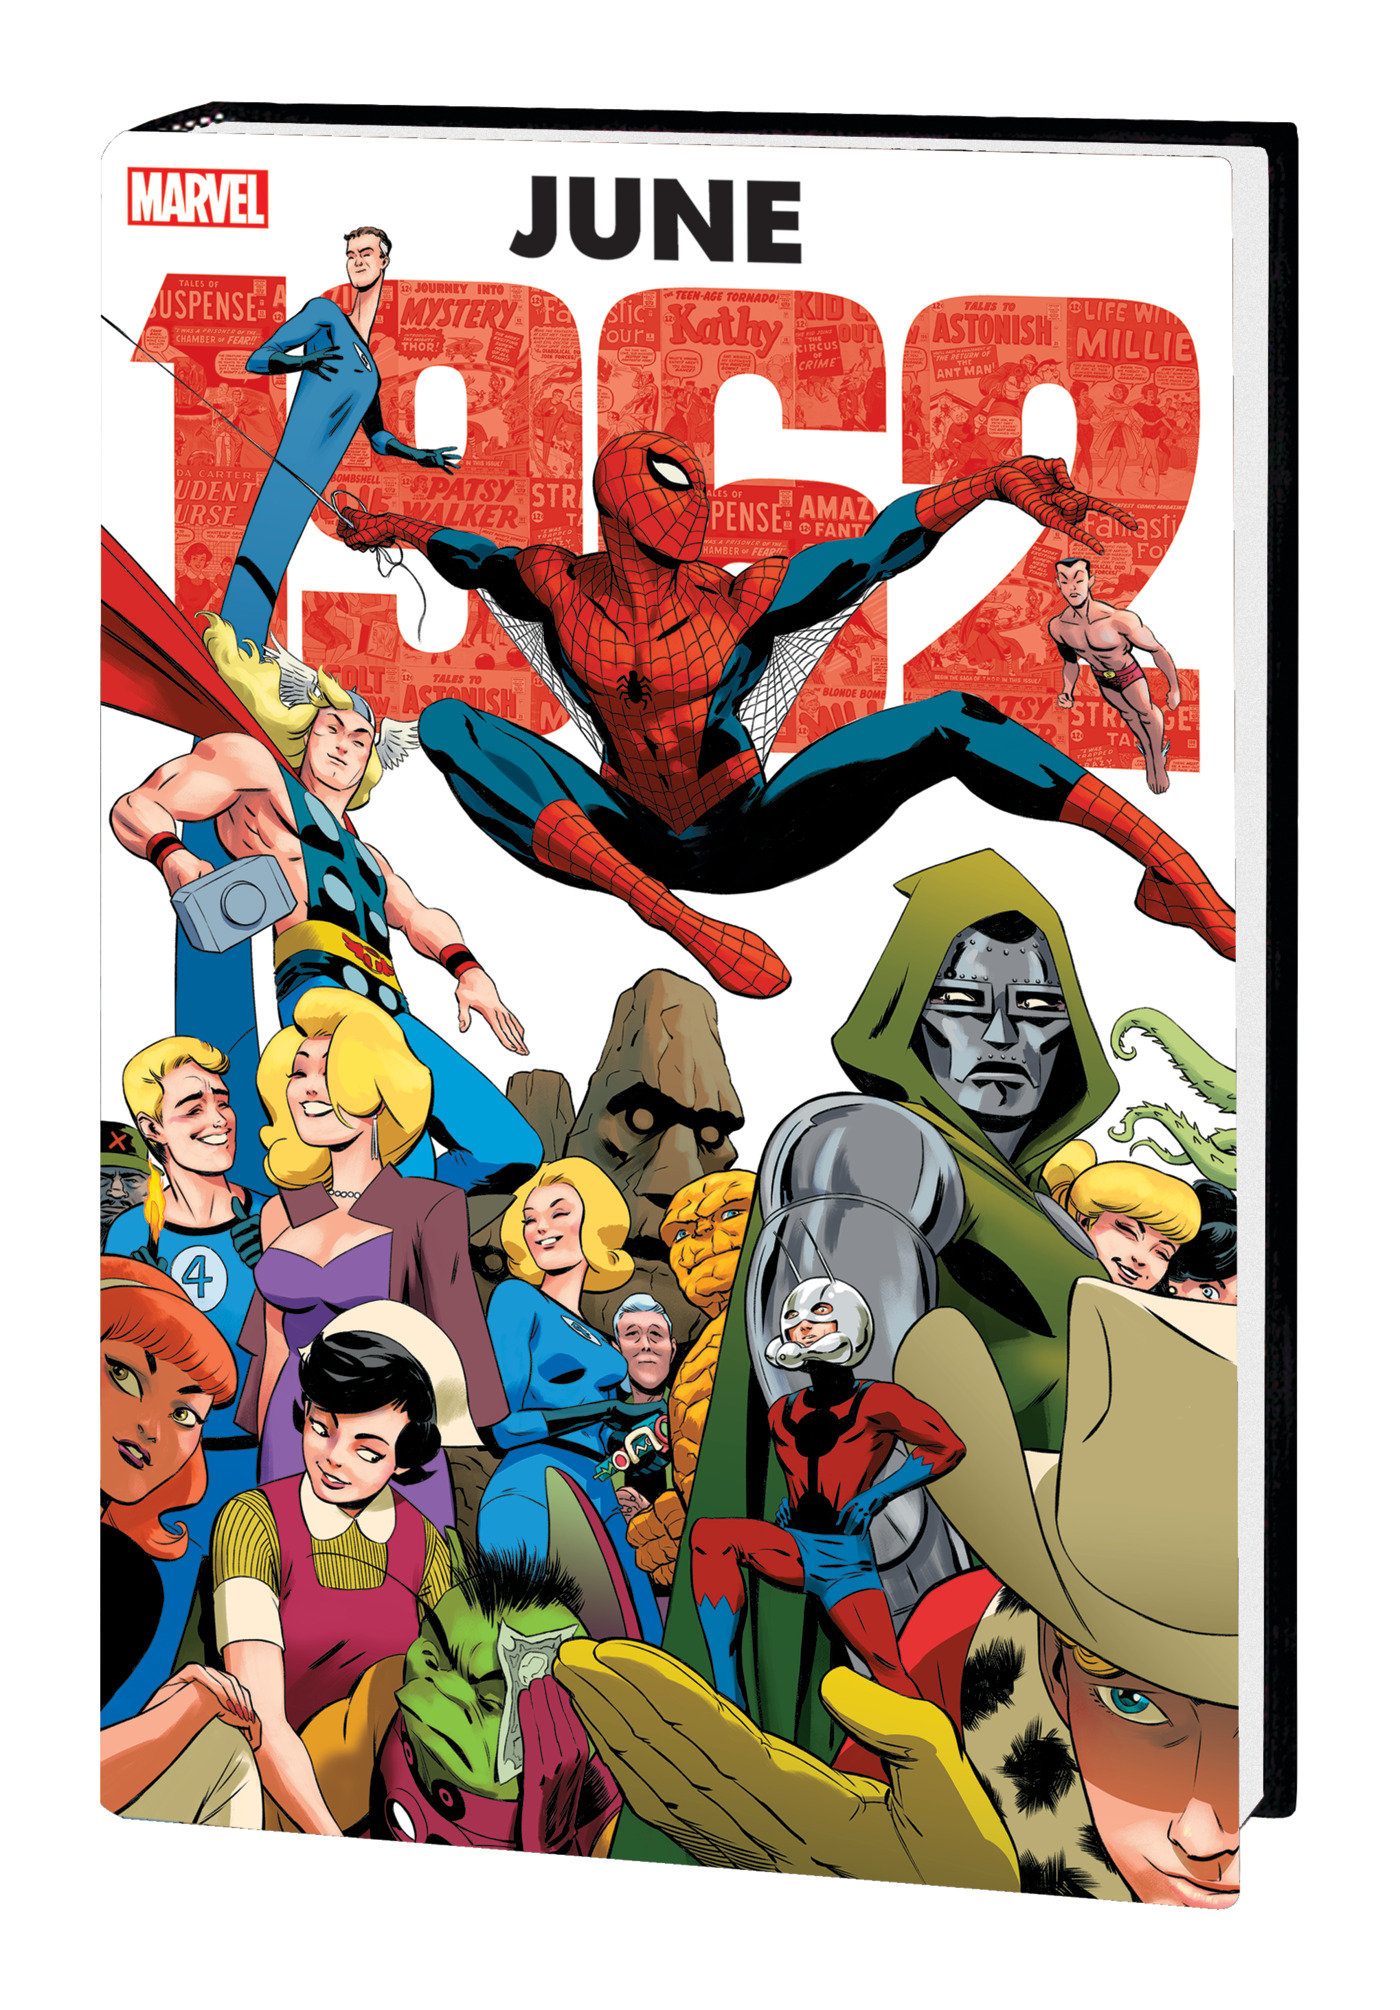 Marvel June 1962 Omnibus Hardcover Rodriguez Cover